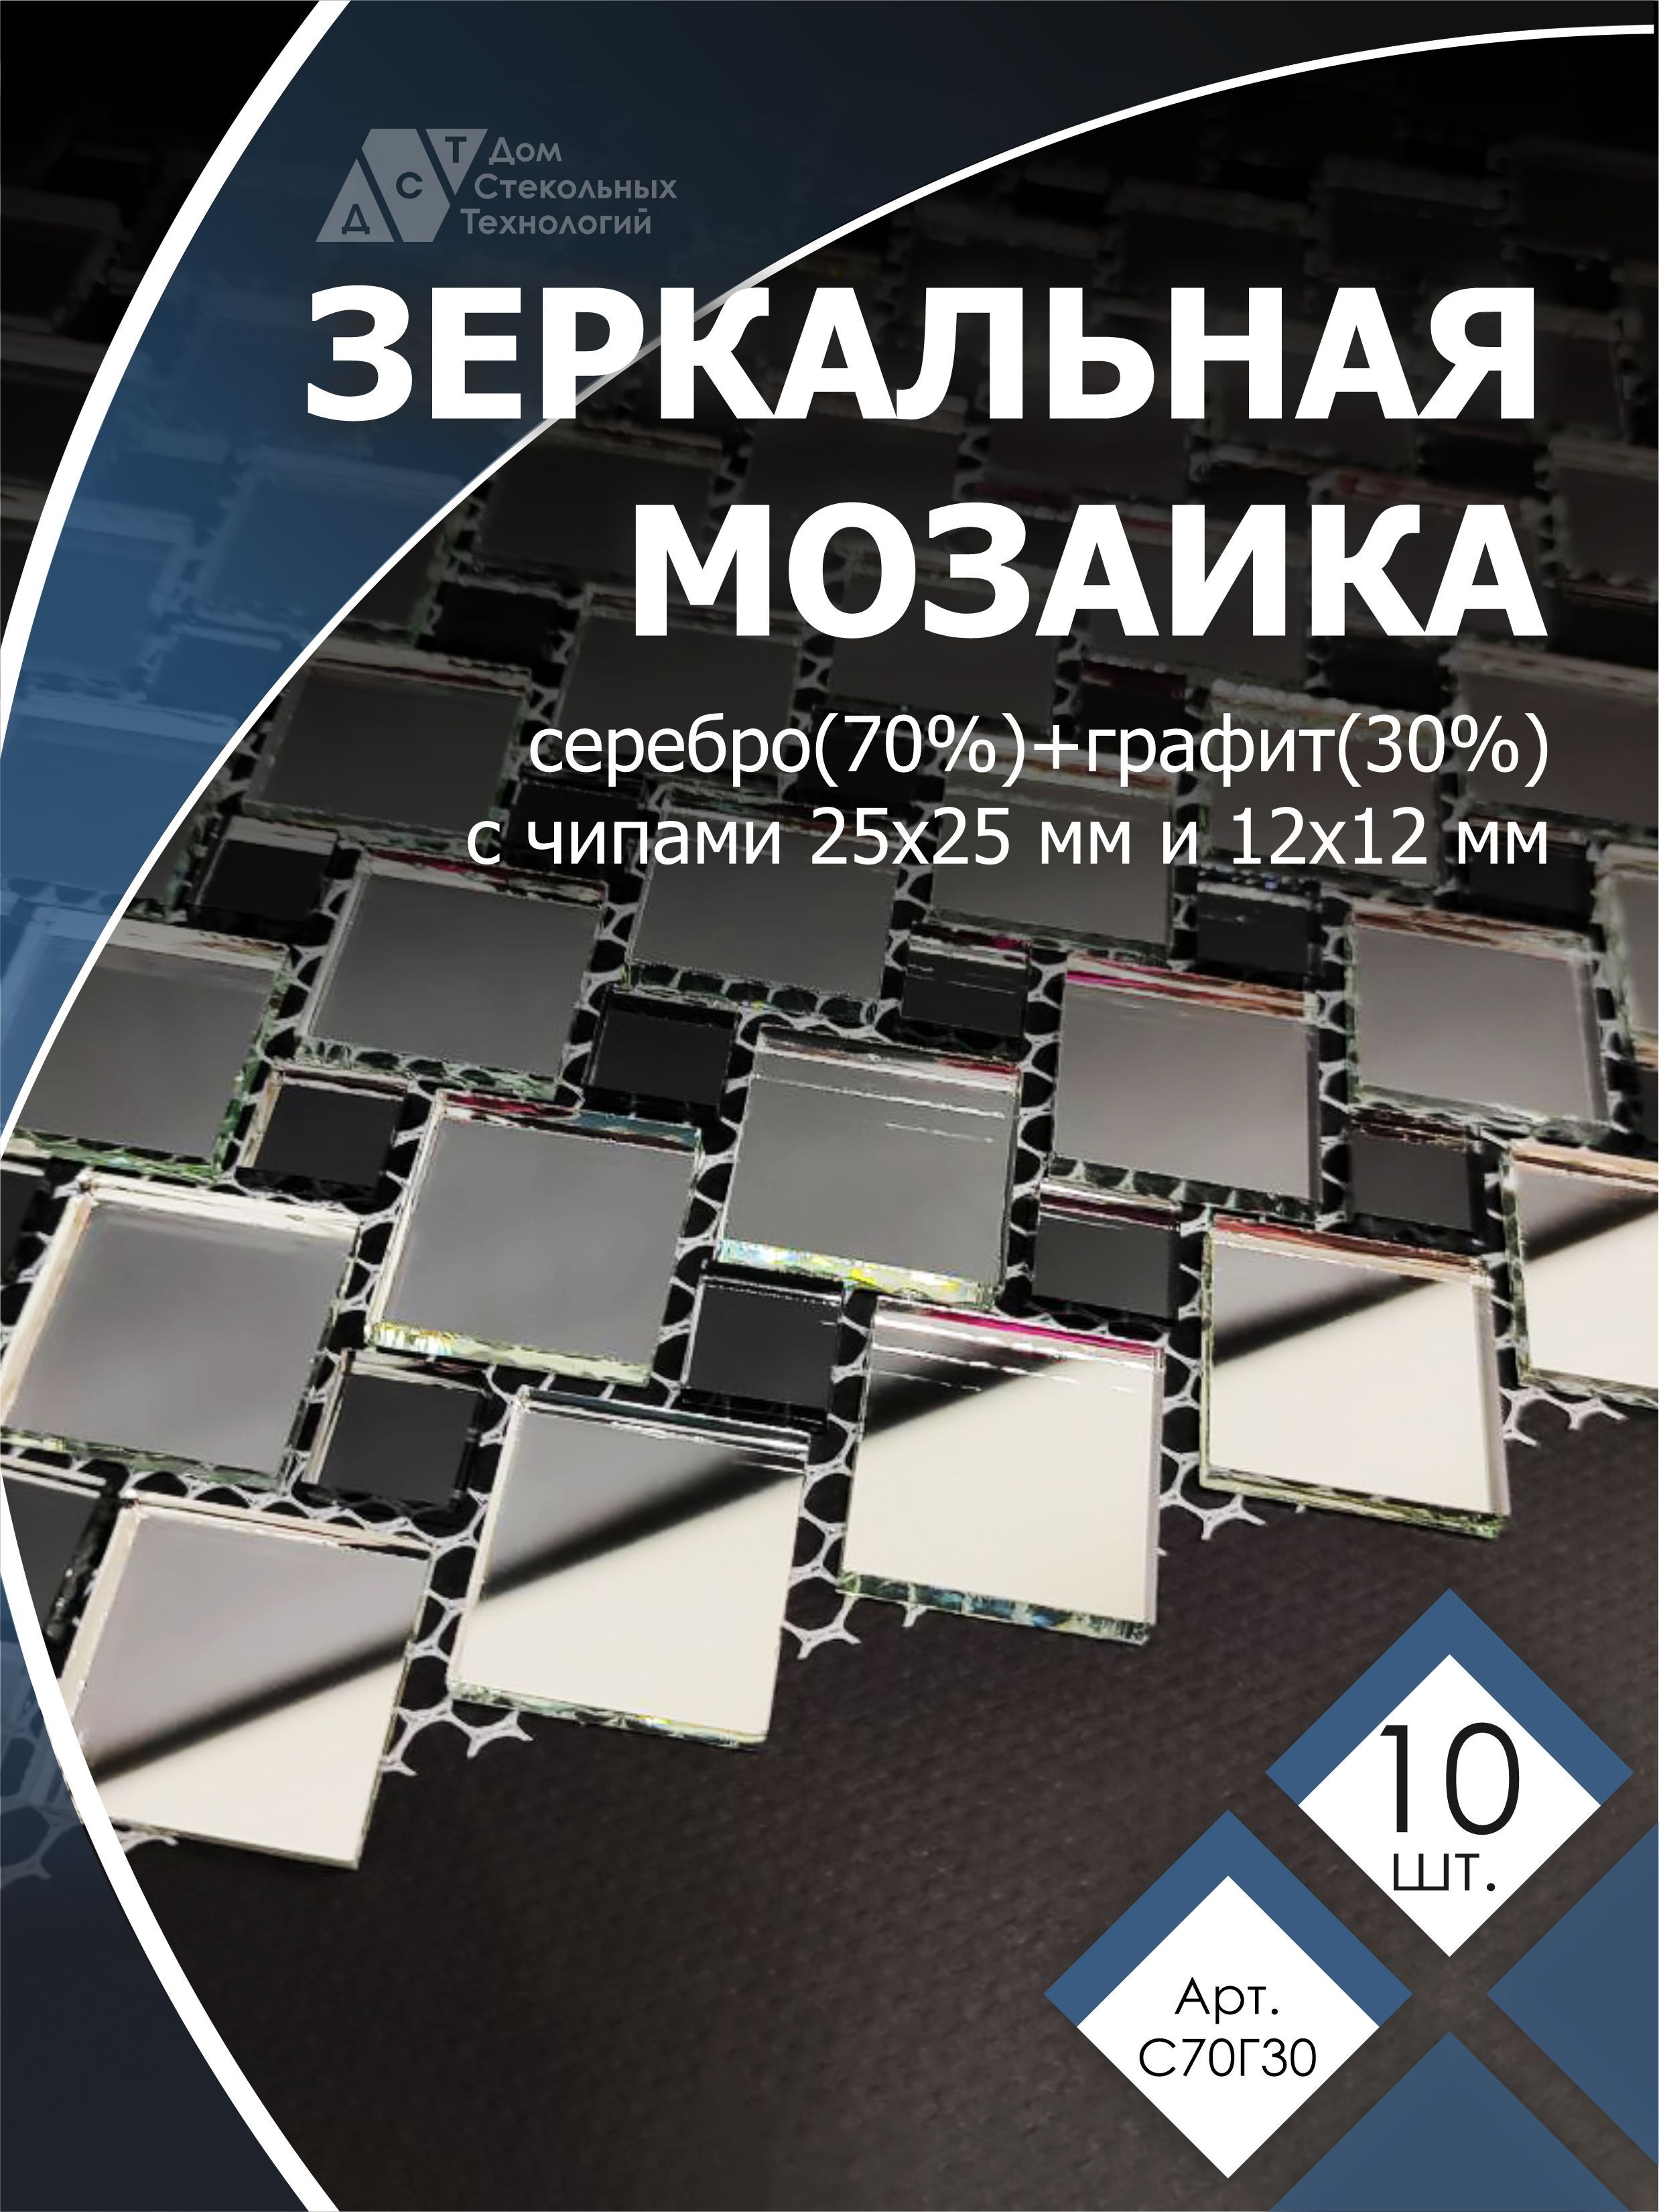 фото Зеркальная мозаика на сетке дст с70г30 300х300 мм, серебро 70%, графит 30%, 10 листов дом стекольных технологий